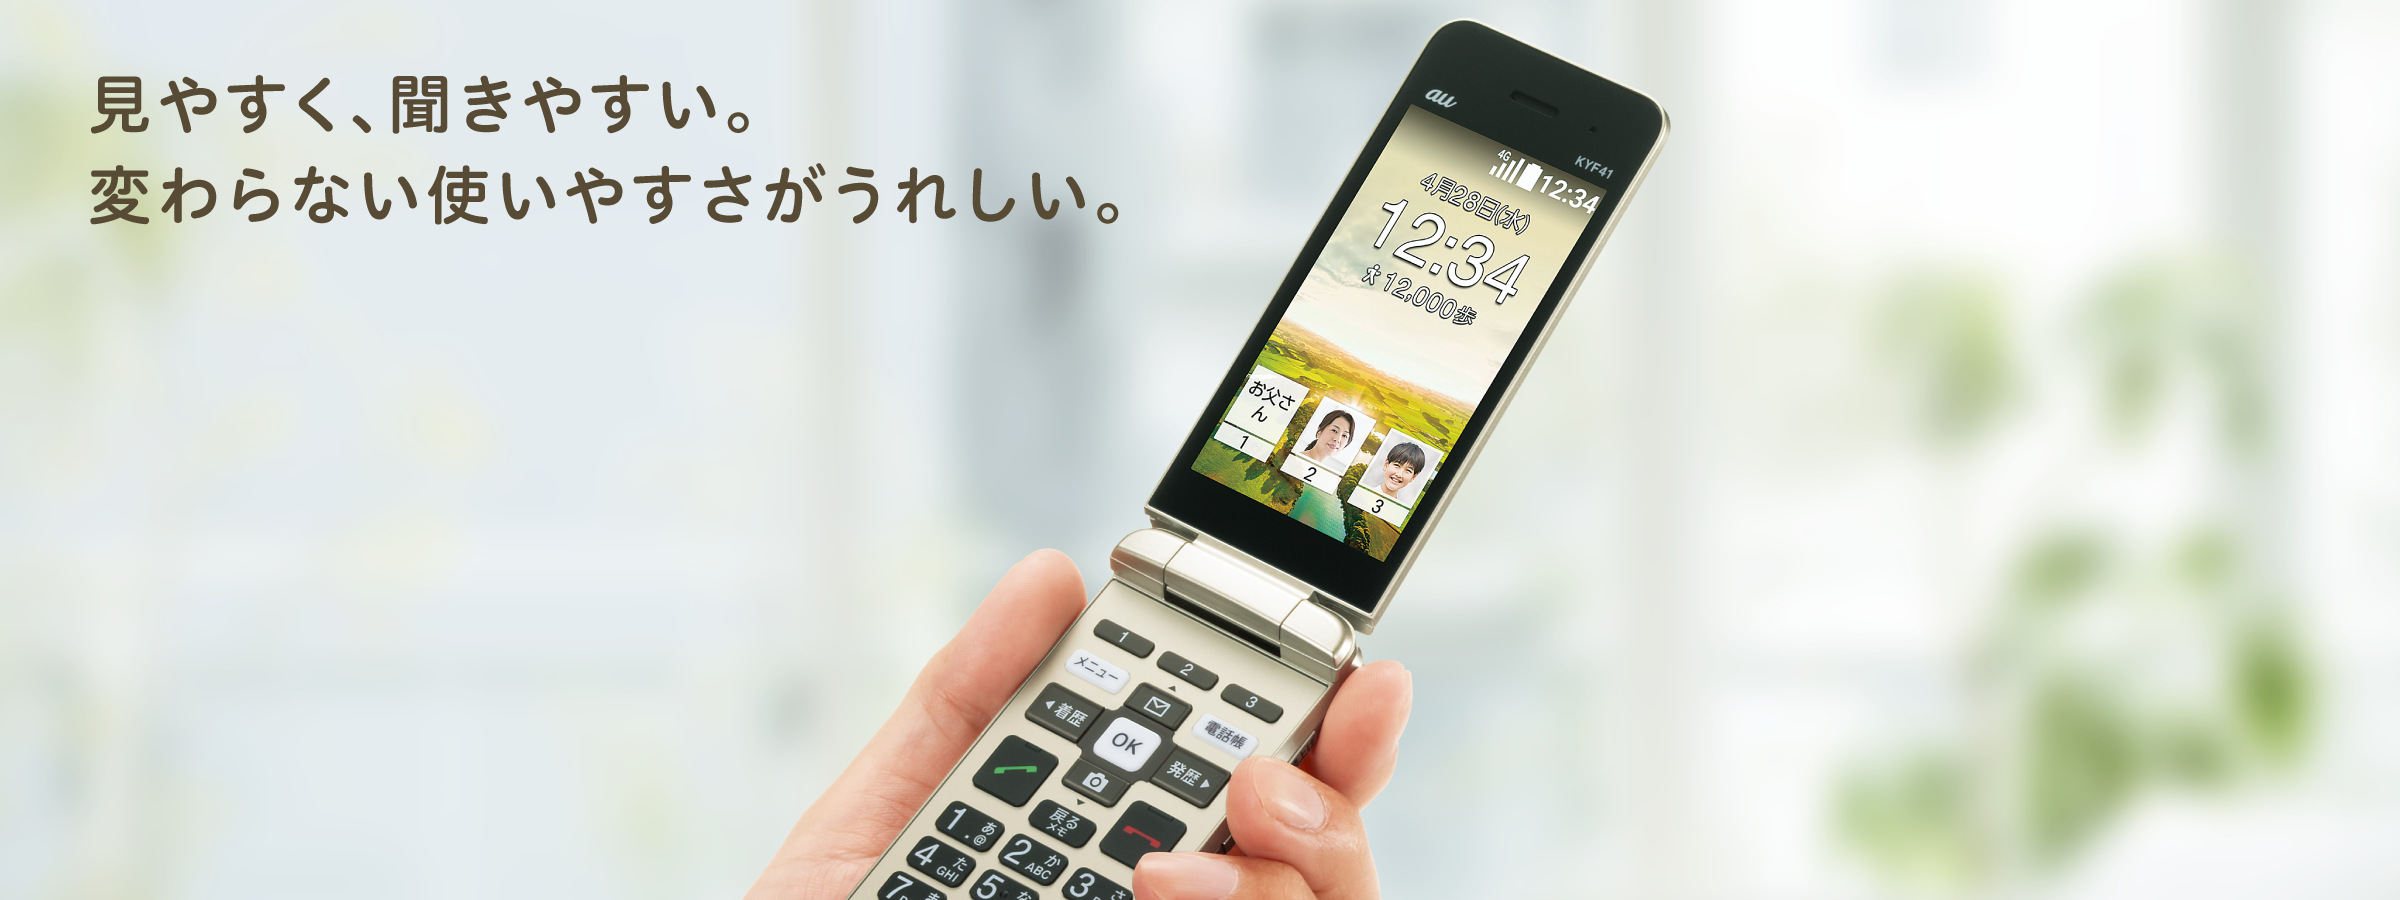 かんたんケータイ KYF41 | 製品情報 | スマートフォン・携帯電話 | 京セラ